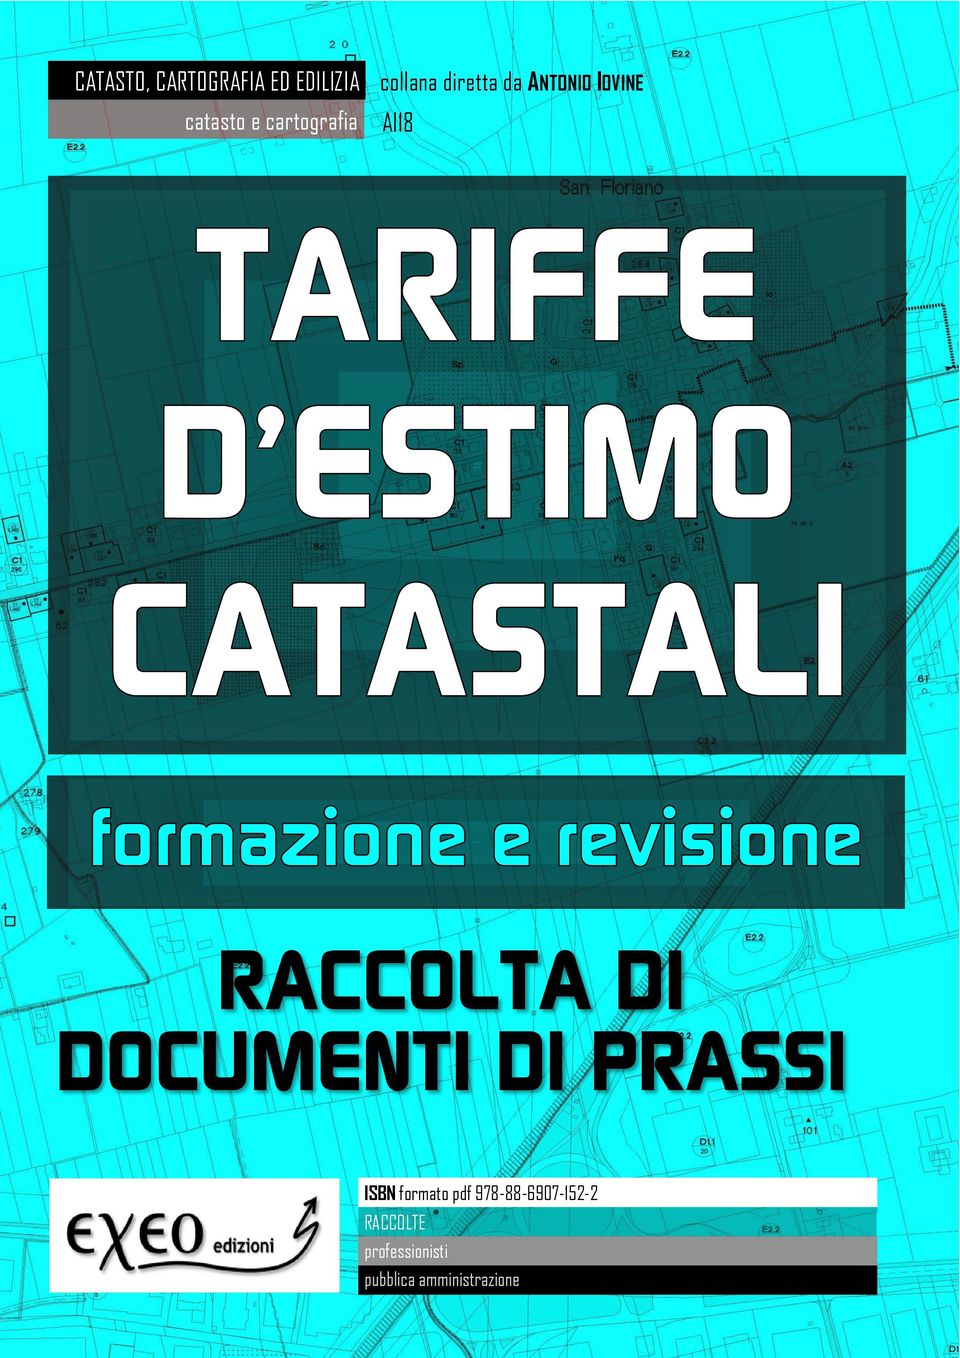 DOCUMENTI DI PRASSI ISBN formato pdf 978-88-6907-152-2